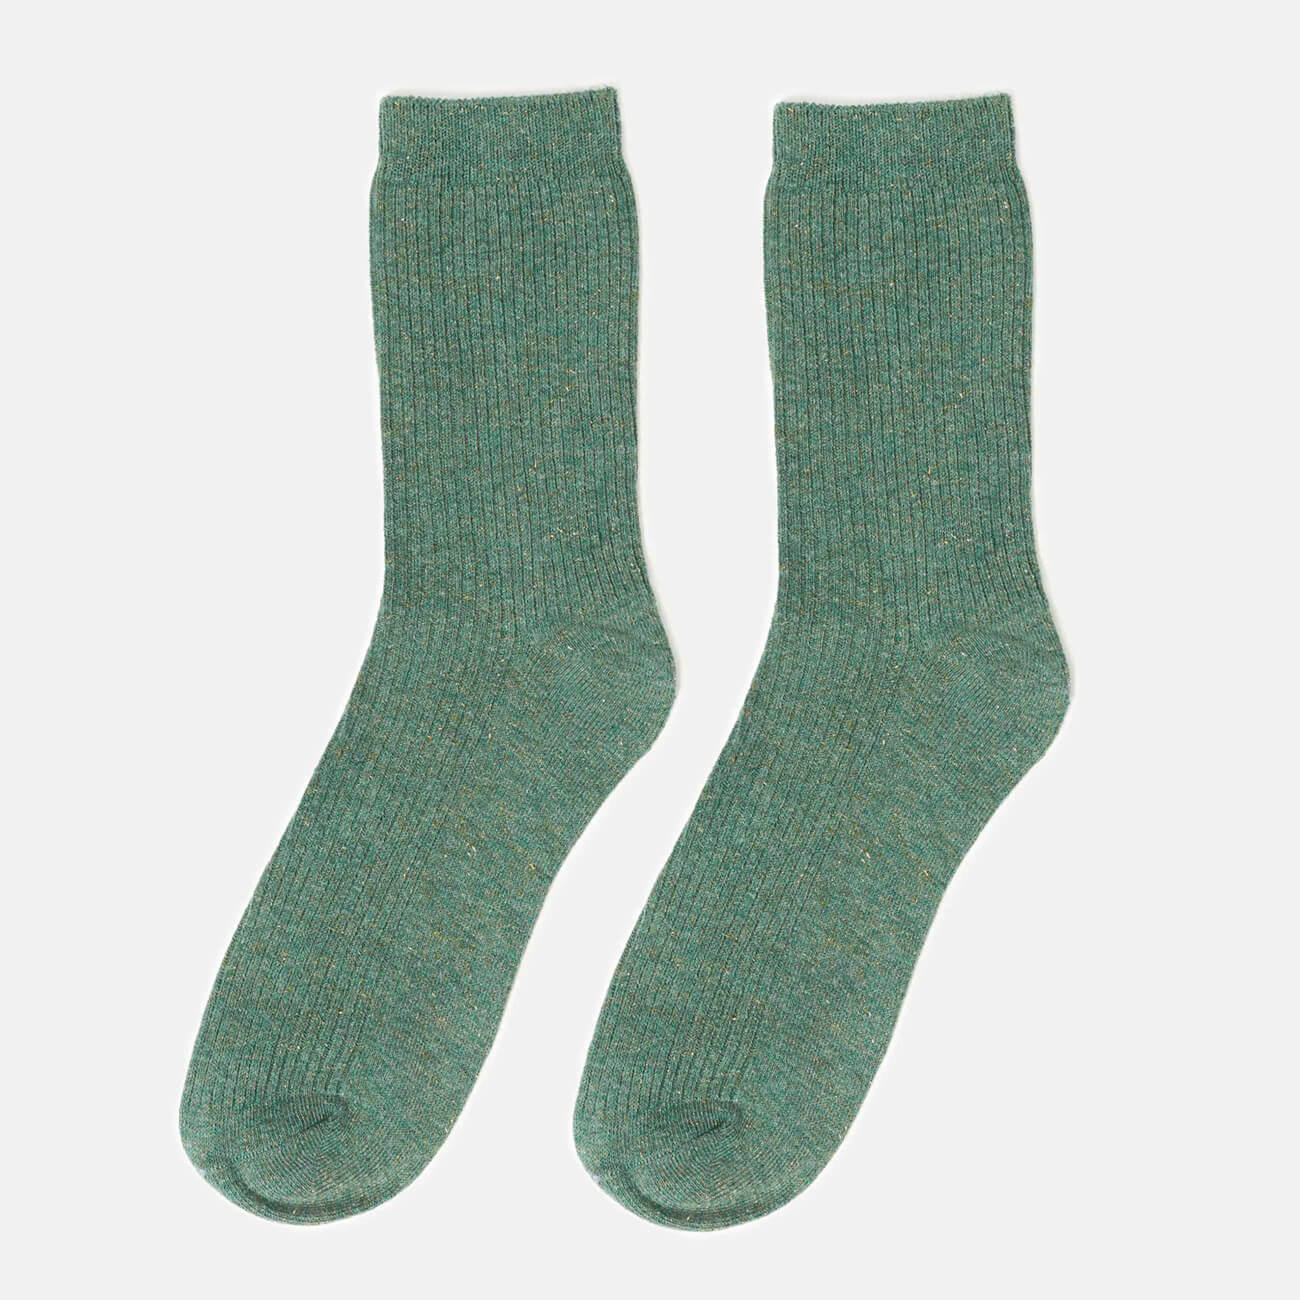 Носки женские, р. 35-38, хлопок/полиэстер, зеленые, Rubchik носки детские р 23 26 хлопок полиэстер зеленые lukewarm